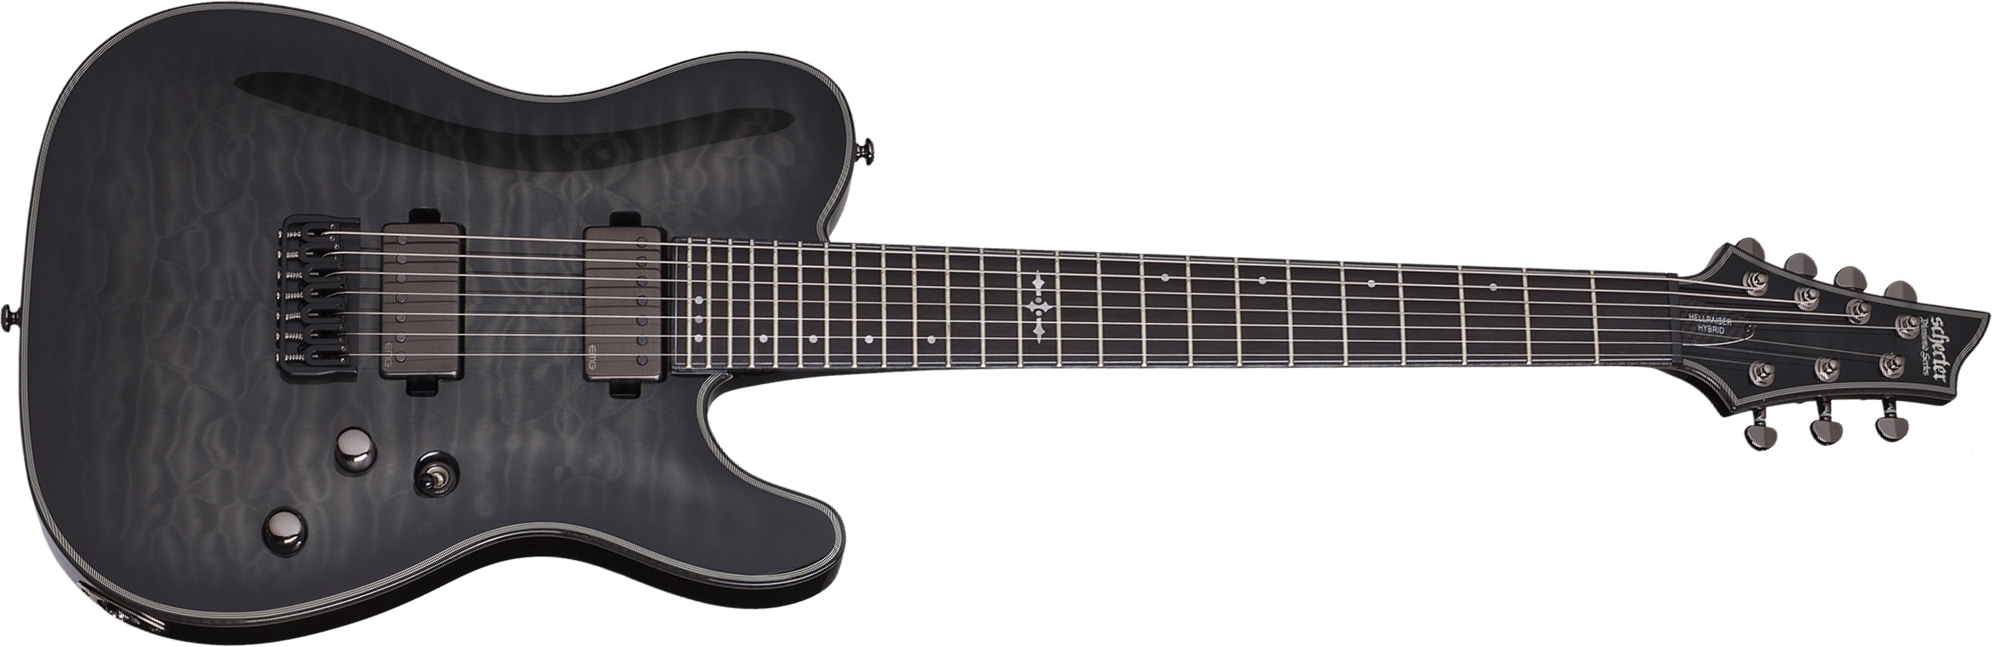 Schecter Pt-7 Hellraiser Hybrid 7c Hh Emg Ht Eb - Transp. Black Burst - 7-snarige elektrische gitaar - Main picture